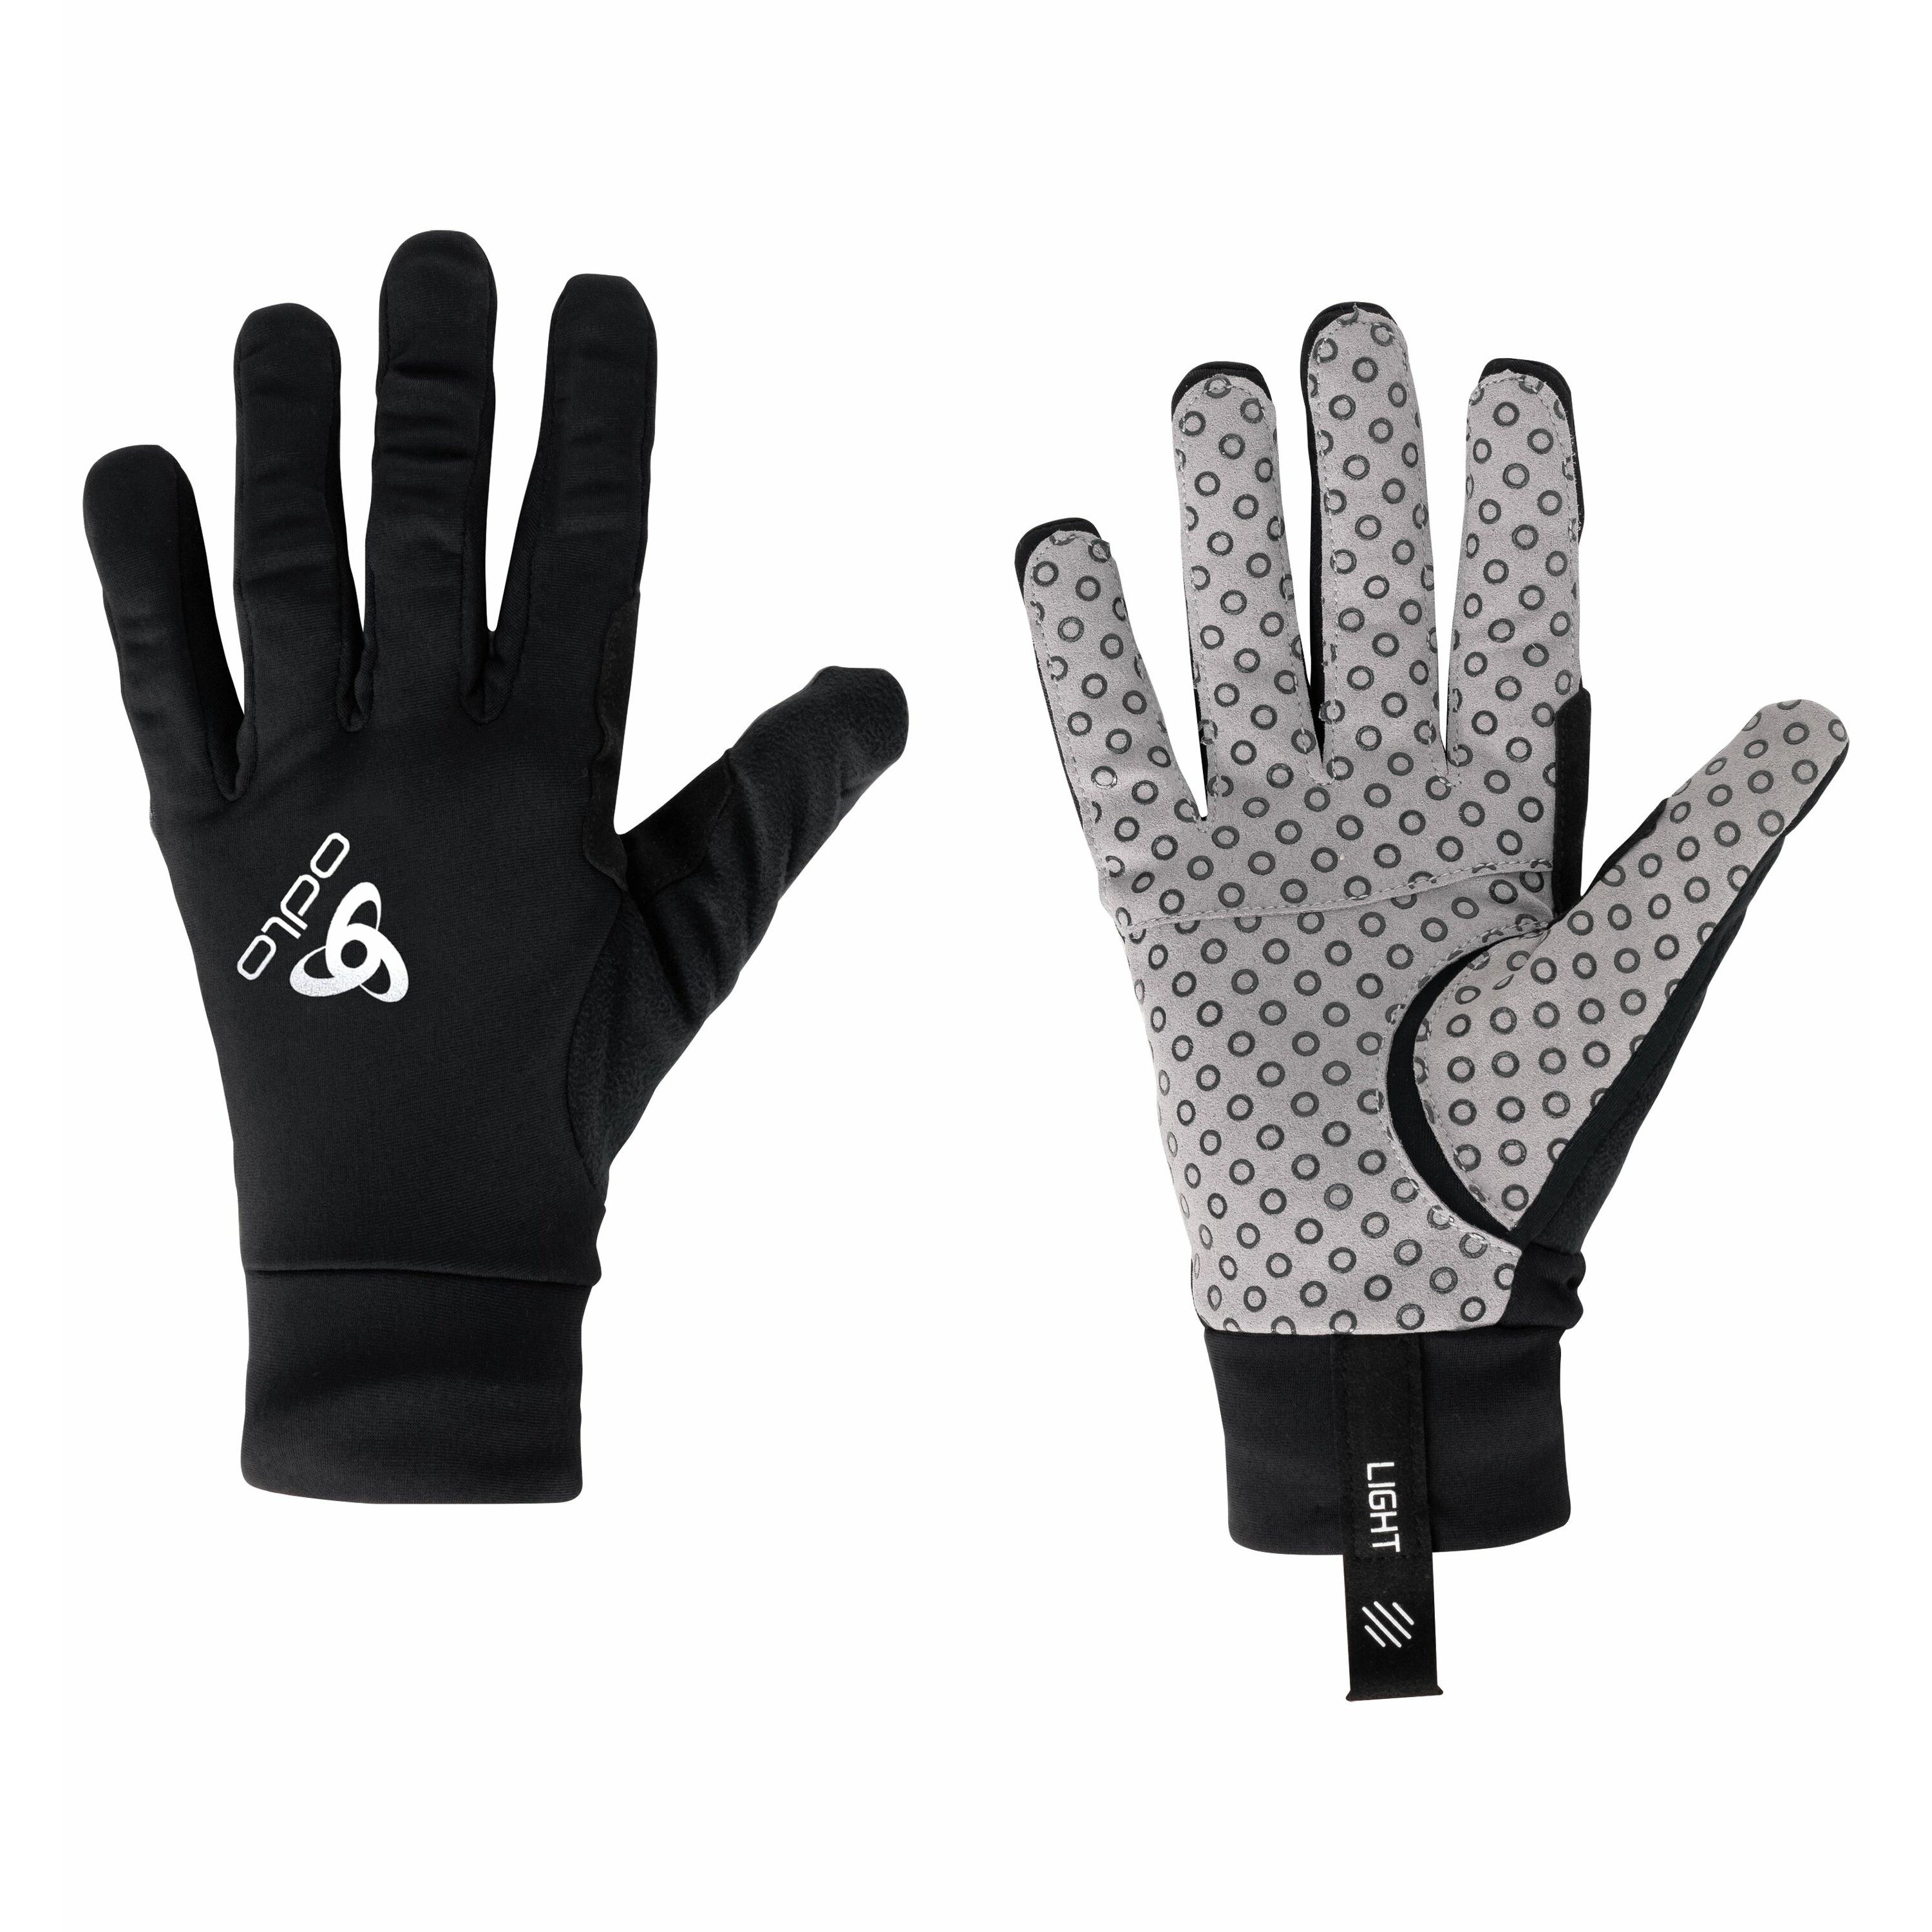 ODLO Aeolus Light Handschuhe, S, schwarz